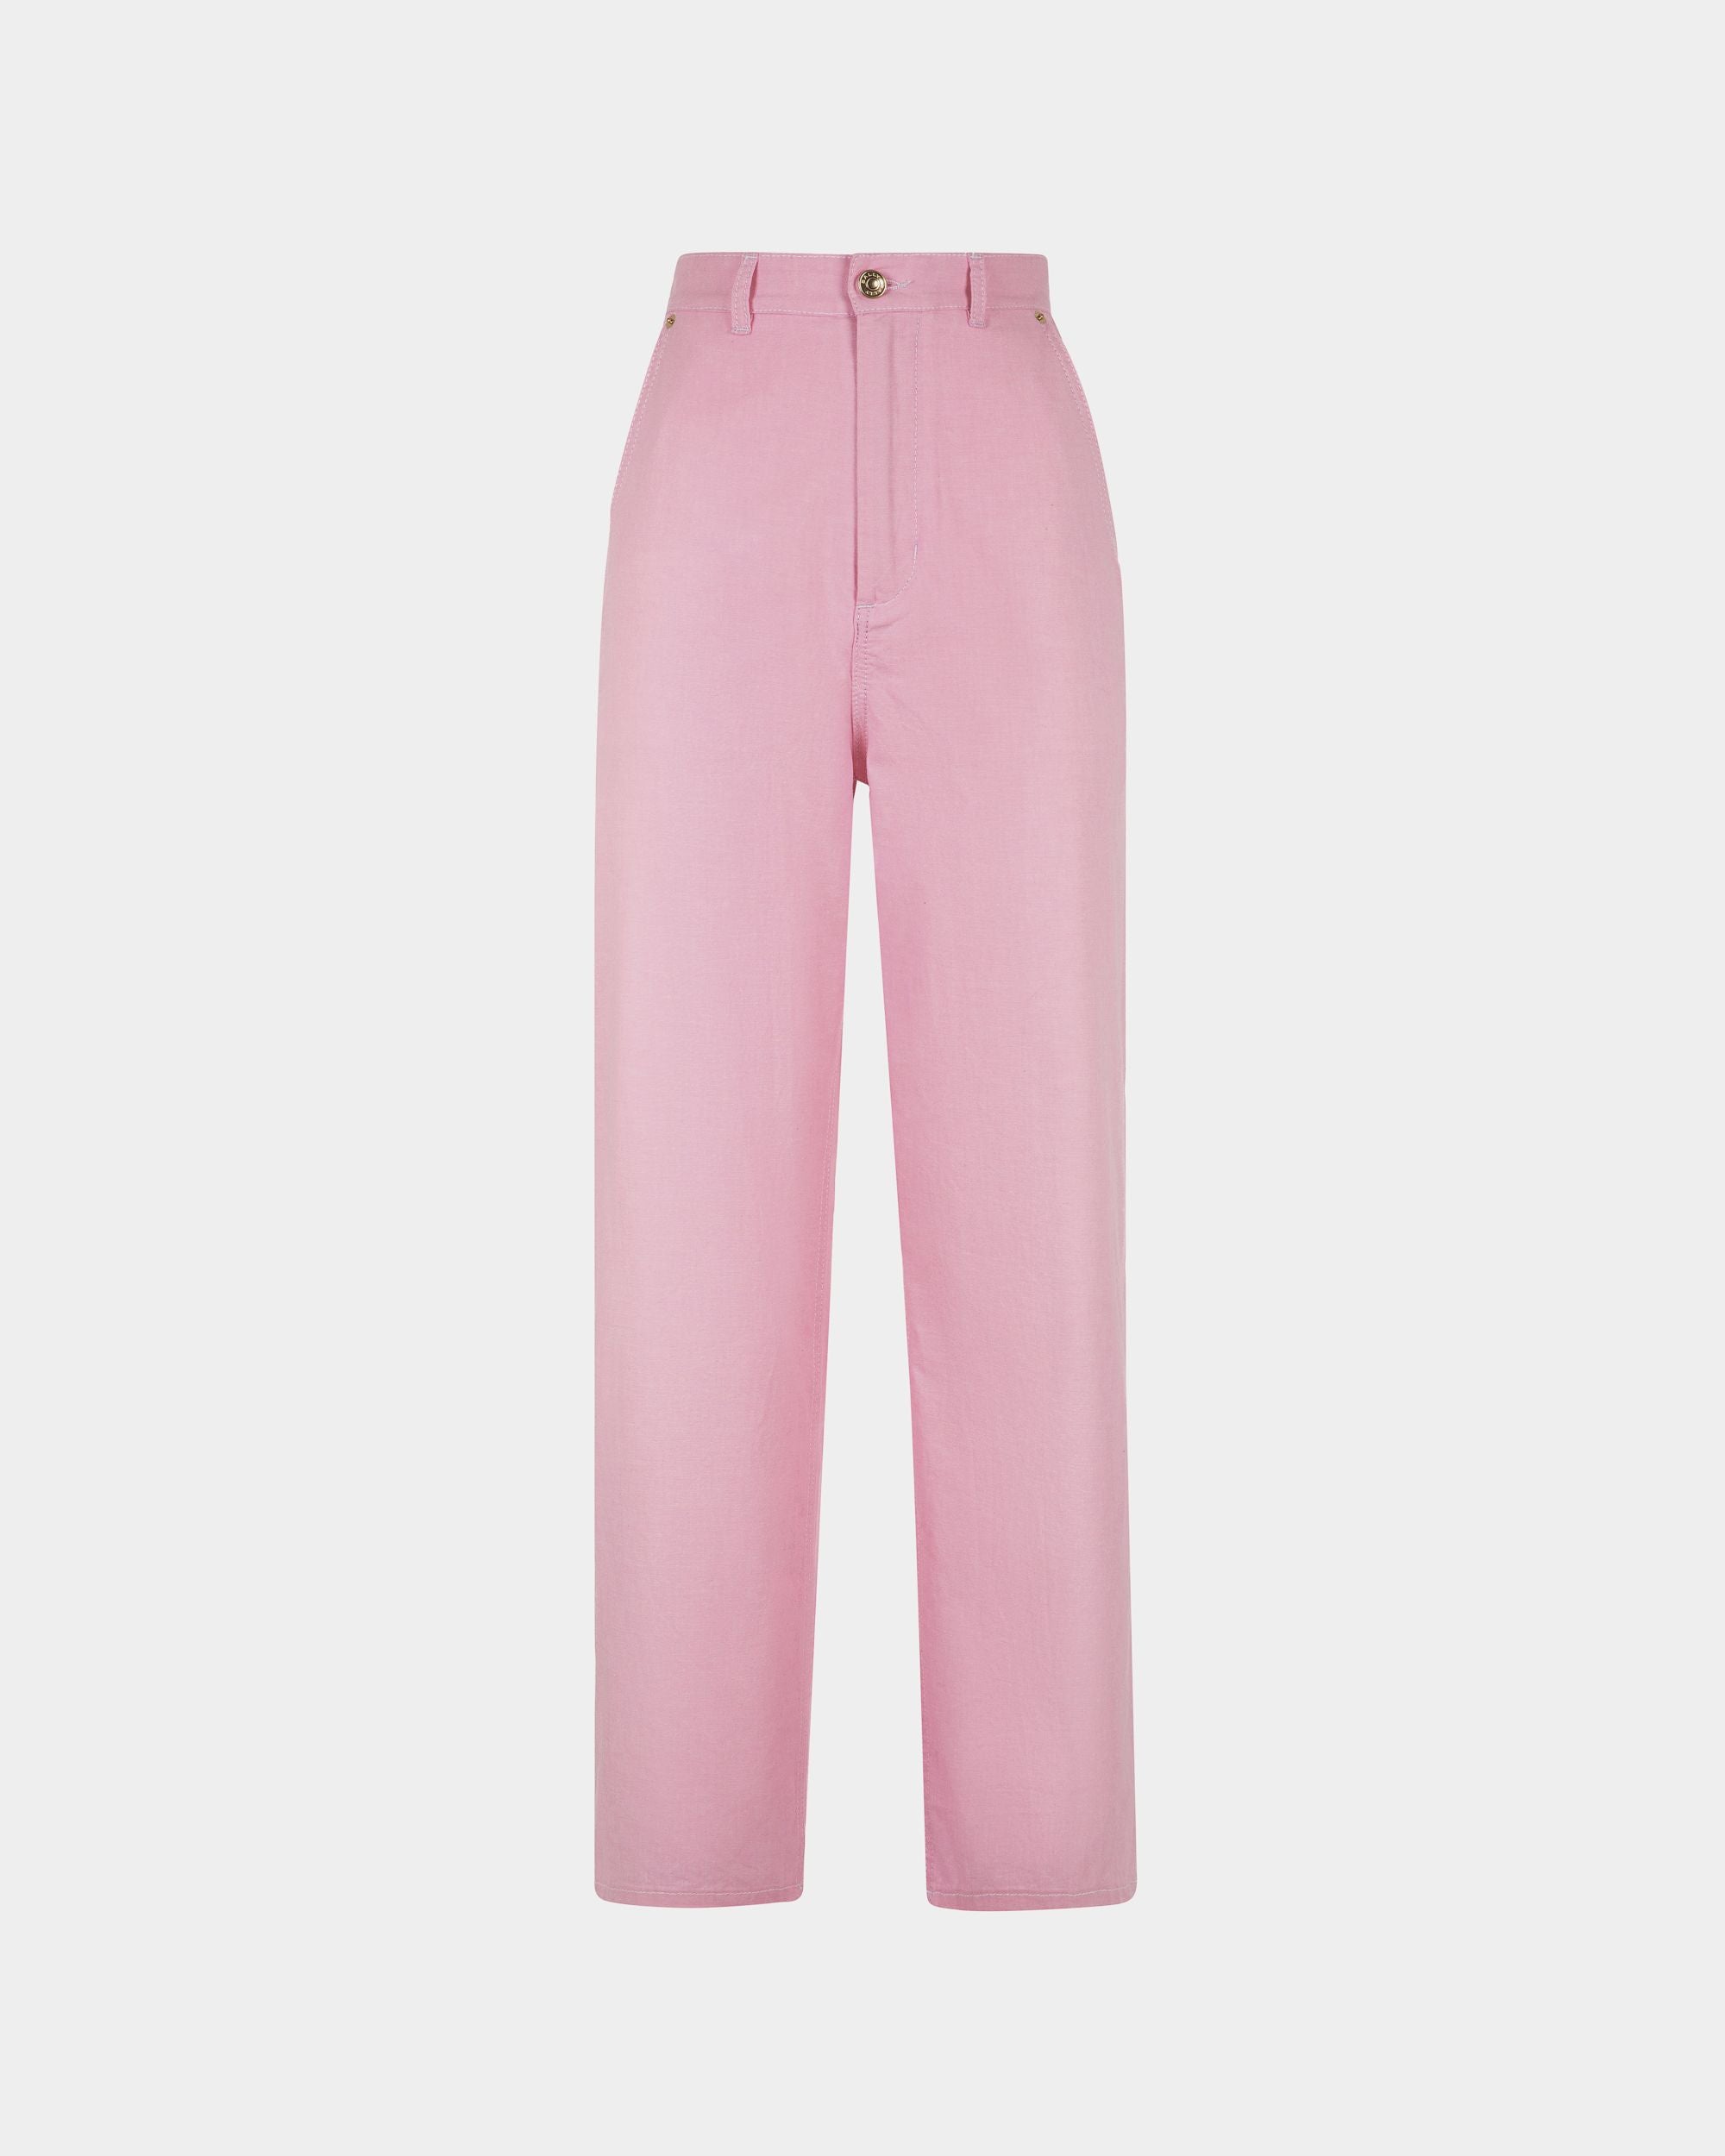 Pantalone da donna in cotone rosa | Bally | Still Life Fronte